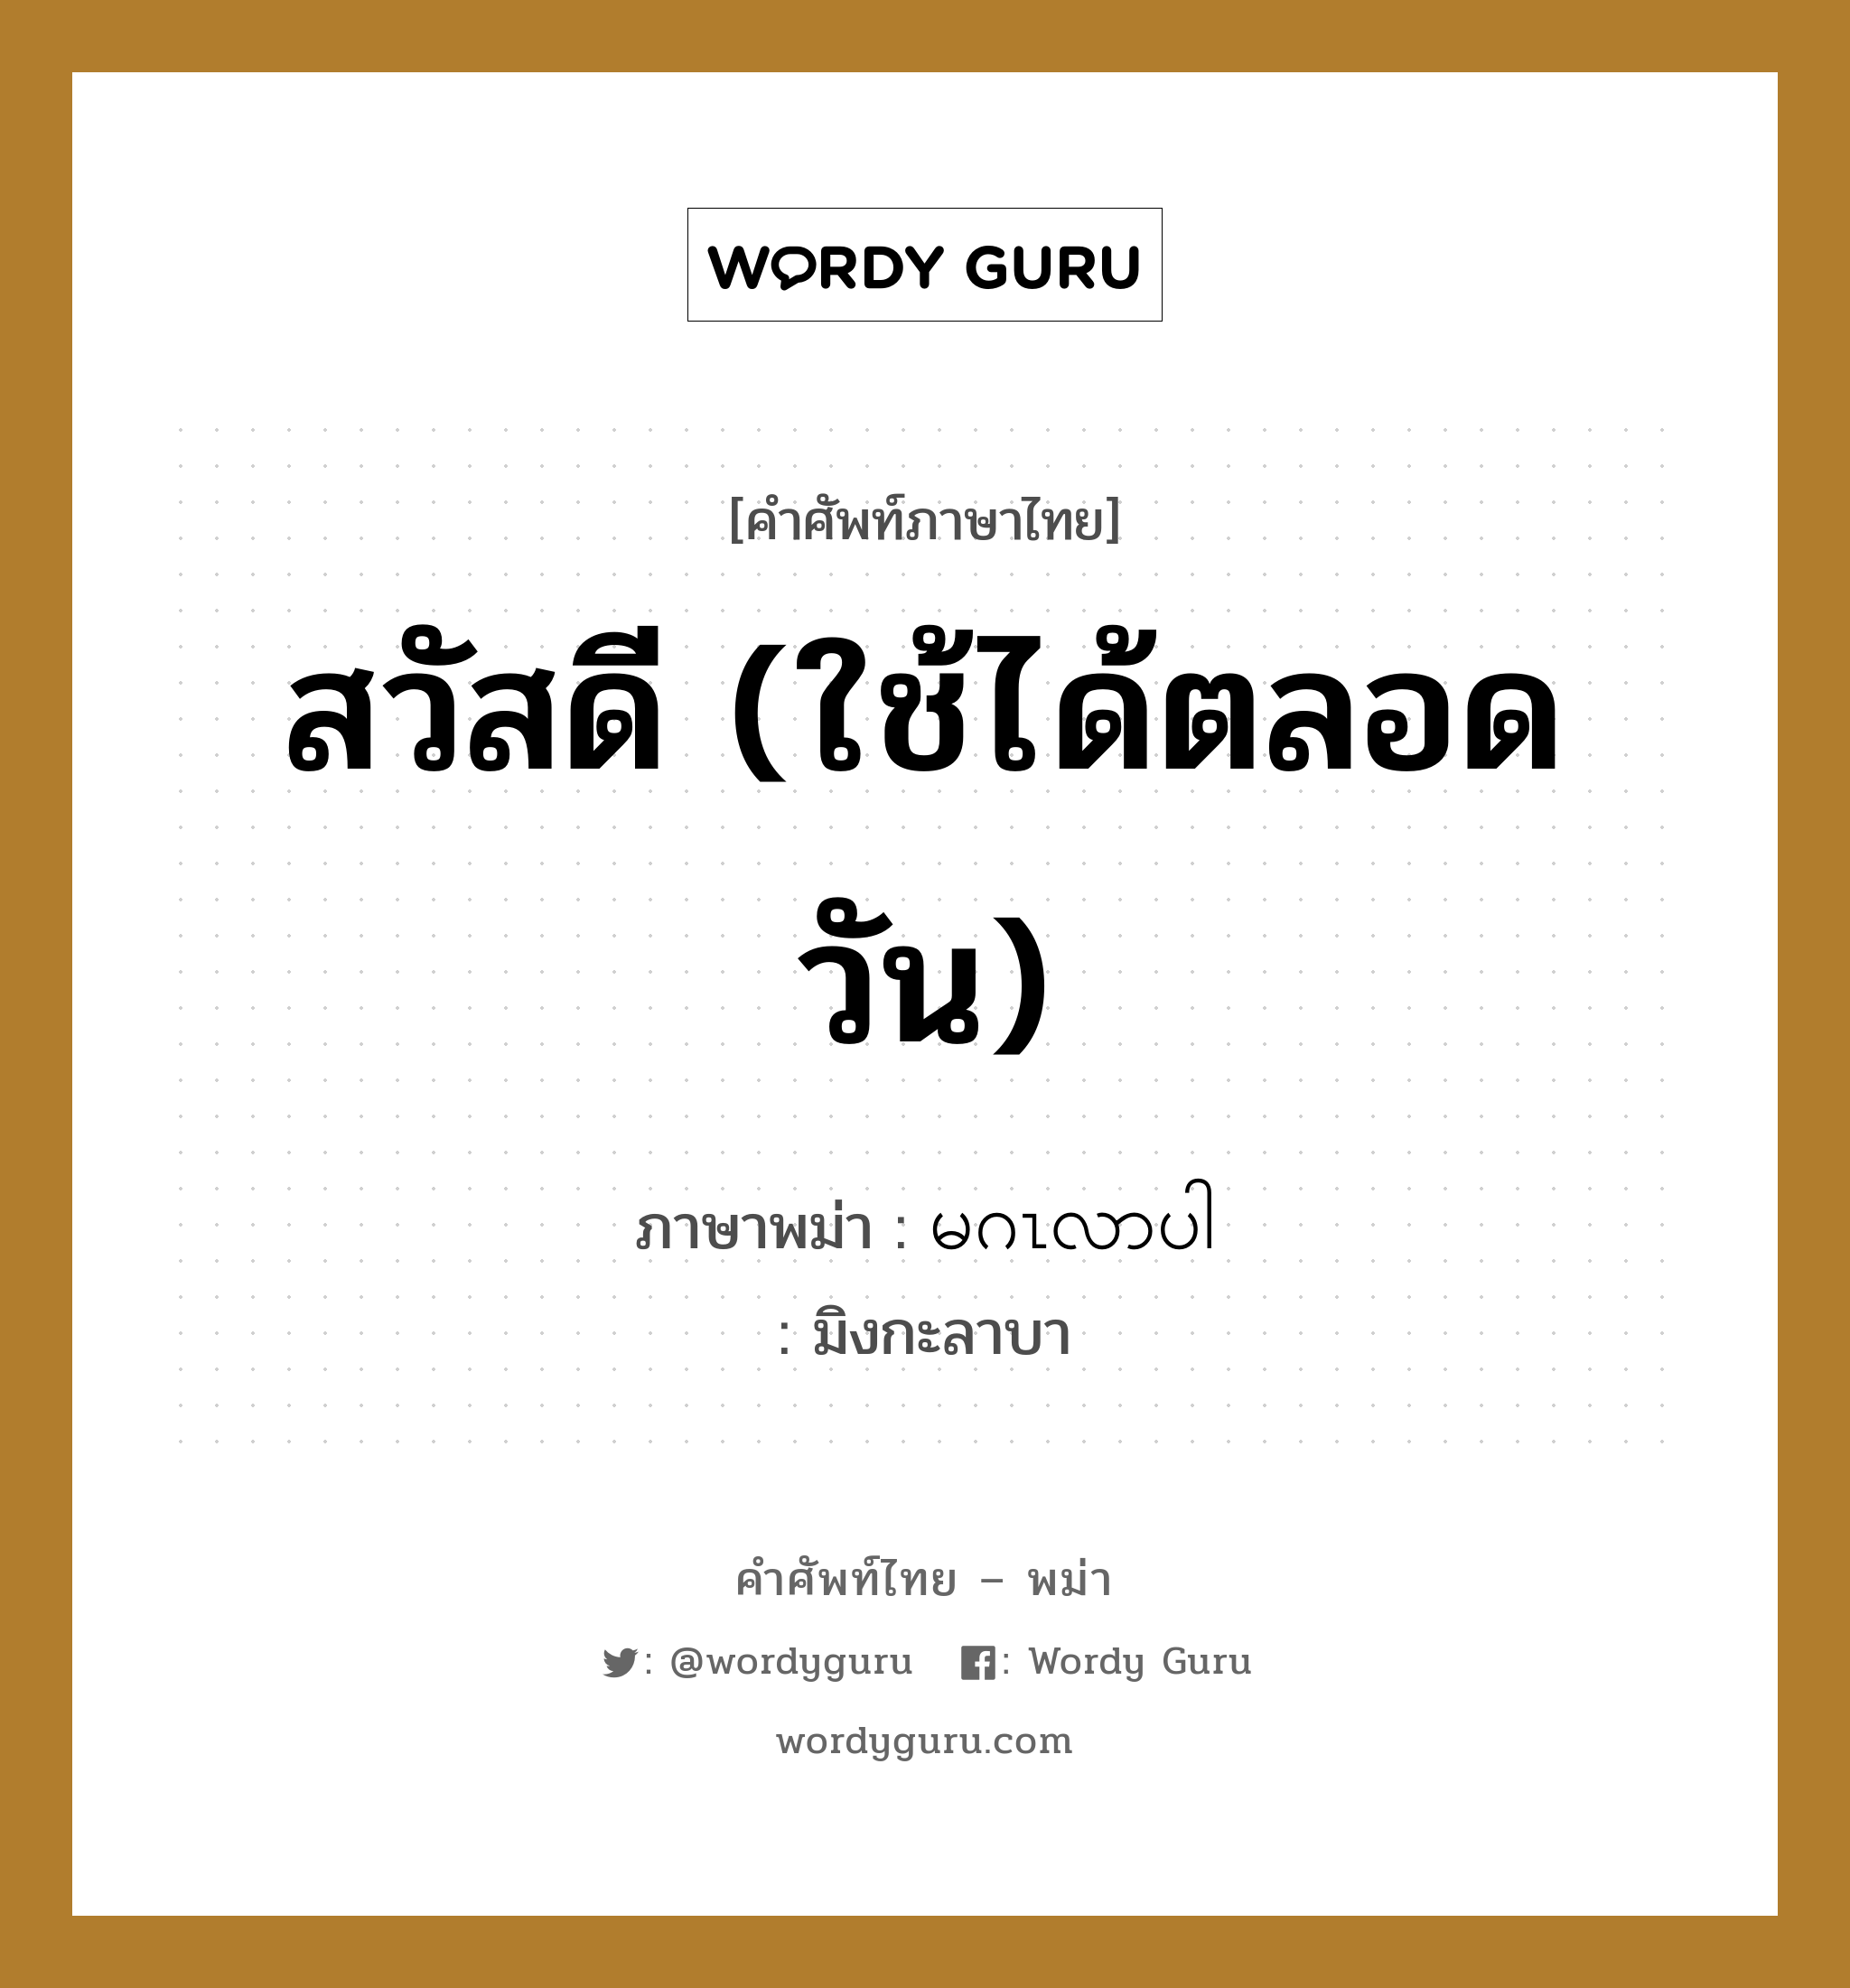 สวัสดี (ใช้ได้ตลอดวัน) ภาษาพม่าคืออะไร, คำศัพท์ภาษาไทย - พม่า สวัสดี (ใช้ได้ตลอดวัน) ภาษาพม่า မဂၤလာပါ หมวด คำทักทาย มิงกะลาบา หมวด คำทักทาย